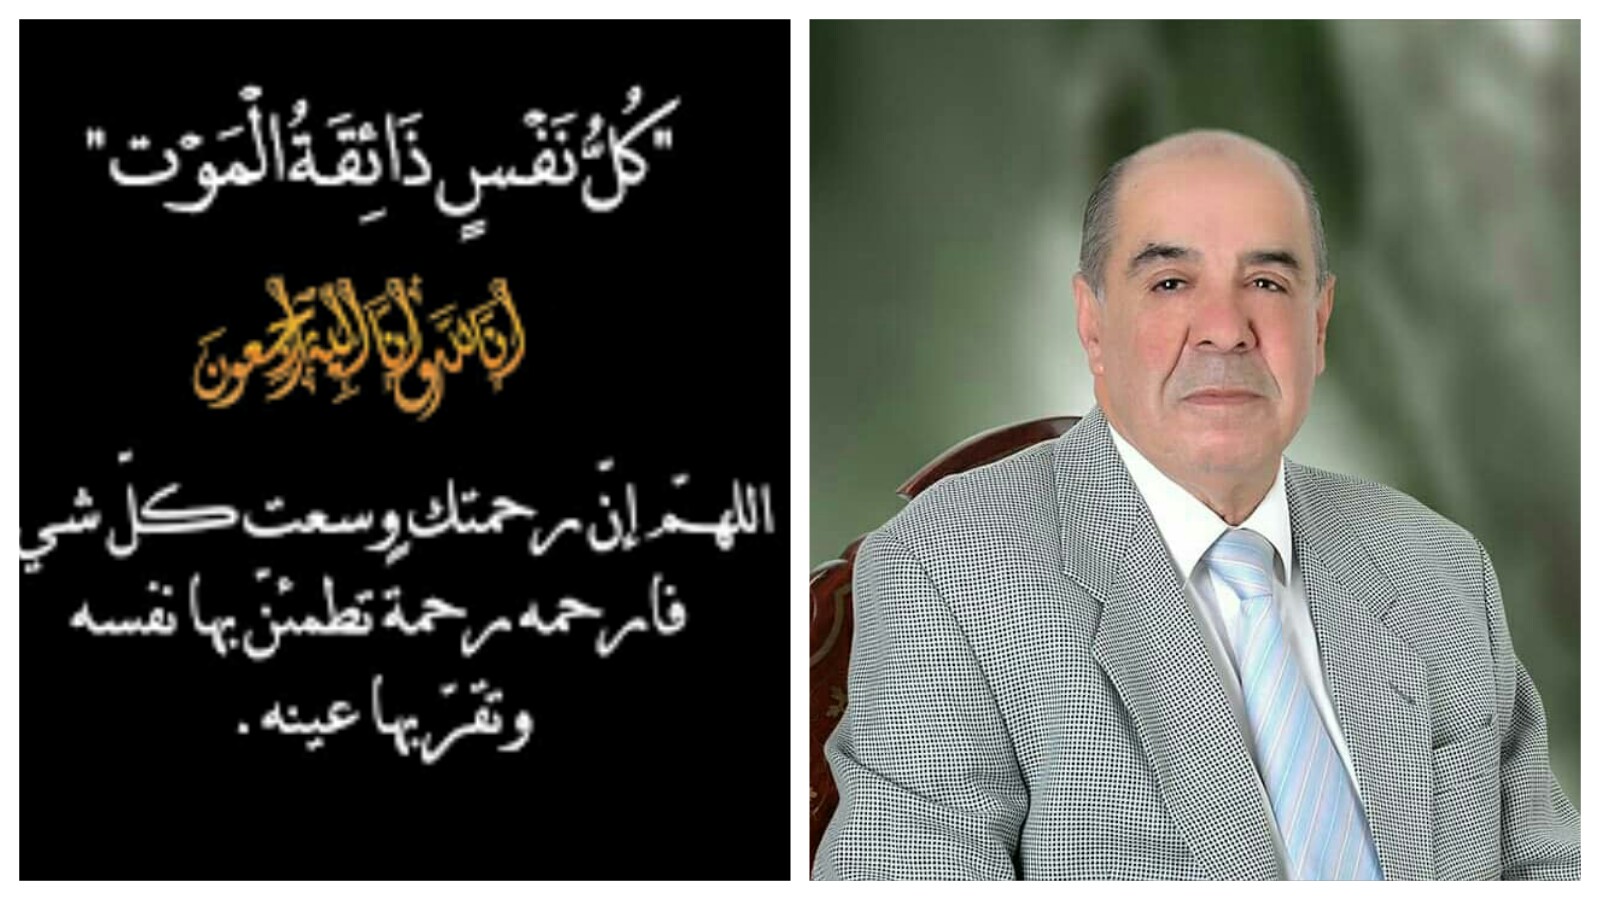 جامعة السلطان مولاي سليمان تعزي في وفاة الزميل الصحافي المقتدر ابن بني ملال عبد السلام بورقية